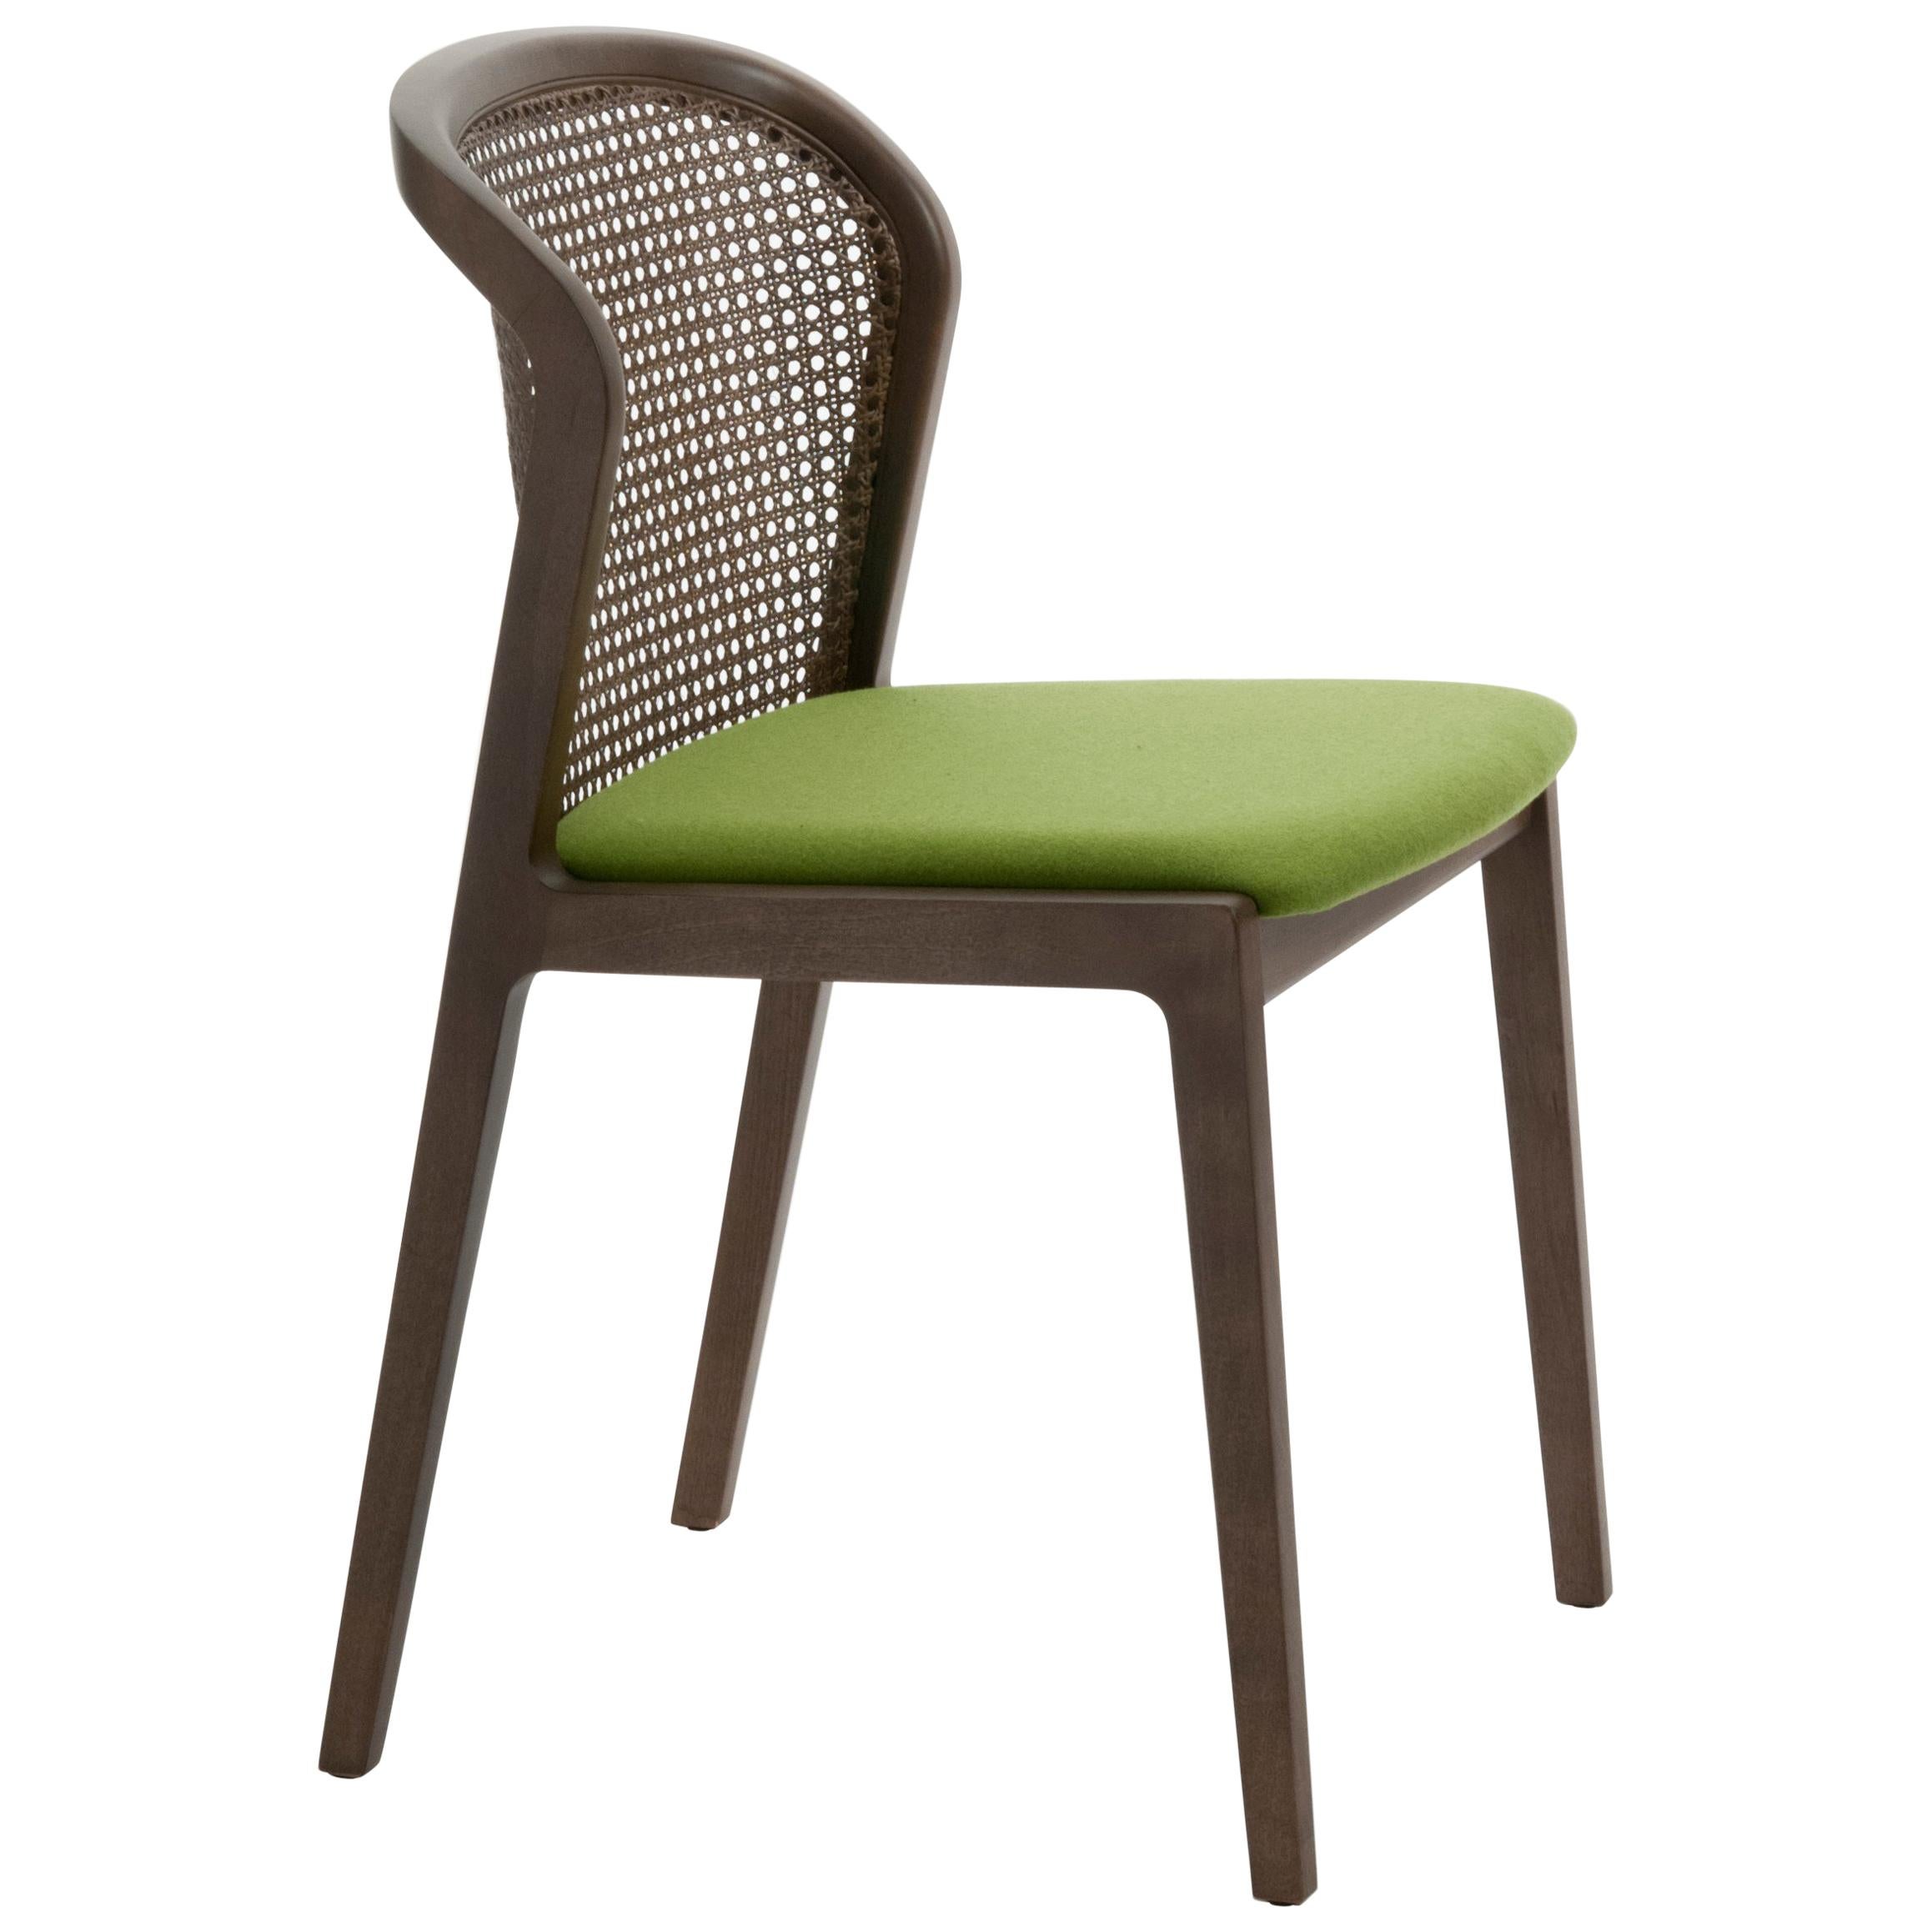 Vienna ist ein außerordentlich komfortabler und eleganter Stuhl, der von Emmanuel Gallina entworfen wurde, der gerne Brancusi zitiert, wenn er sagt, dass 